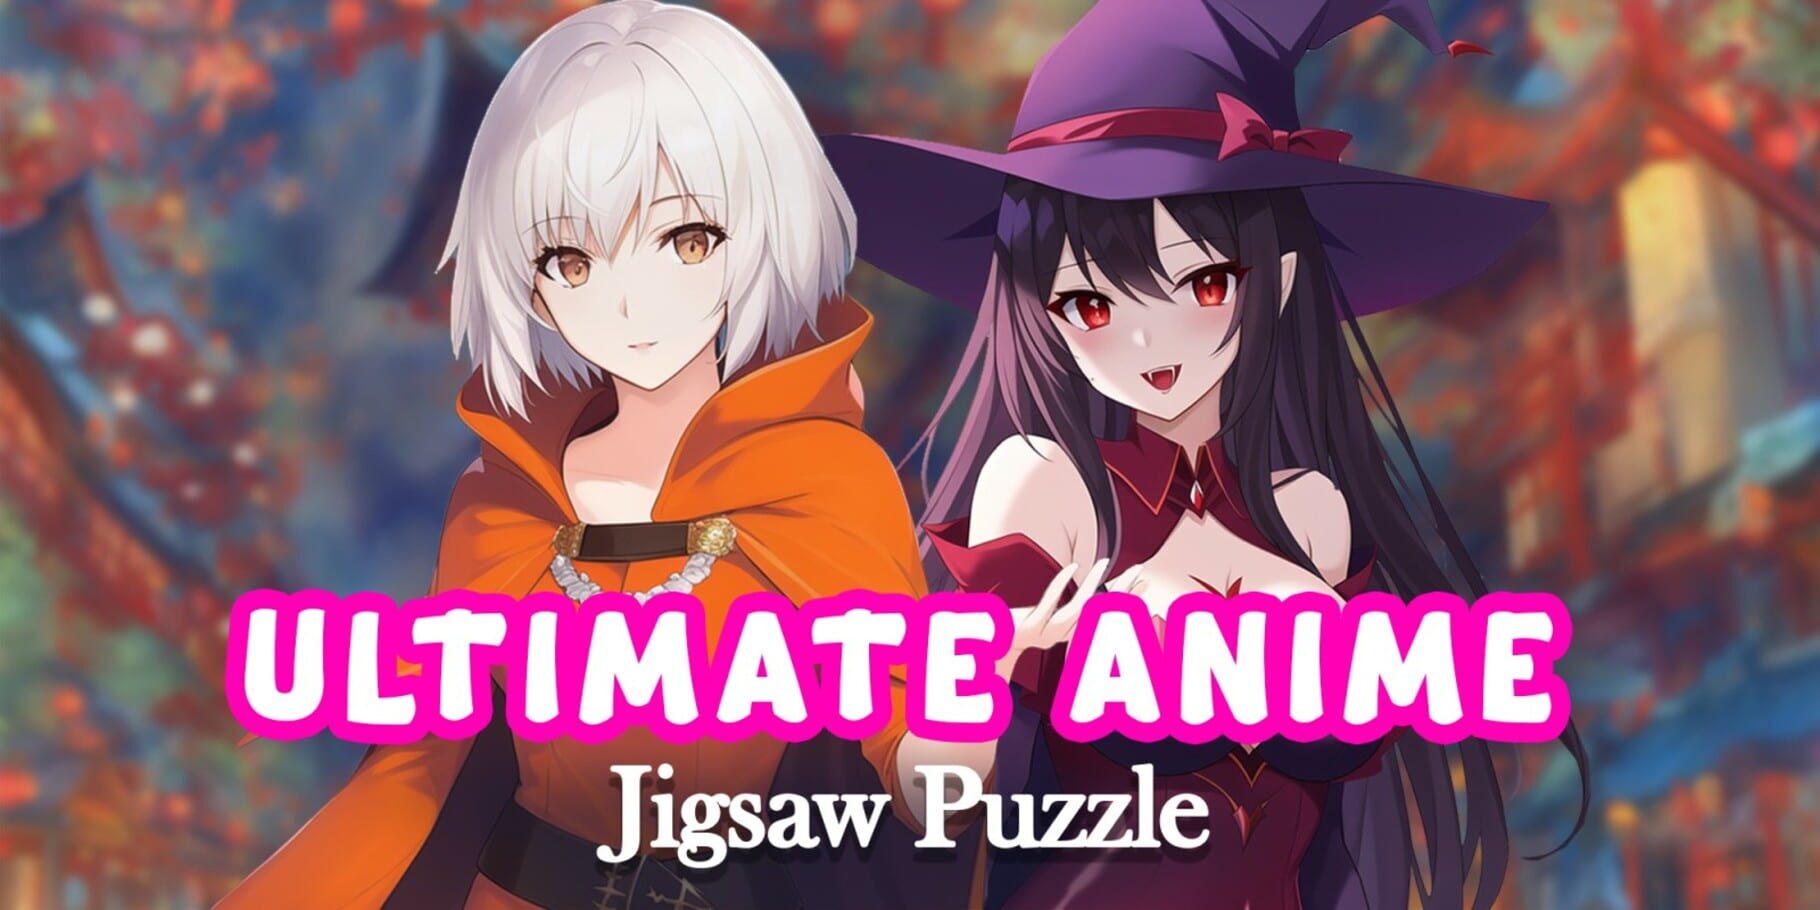 Arte - Ultimate Anime Jigsaw Puzzle